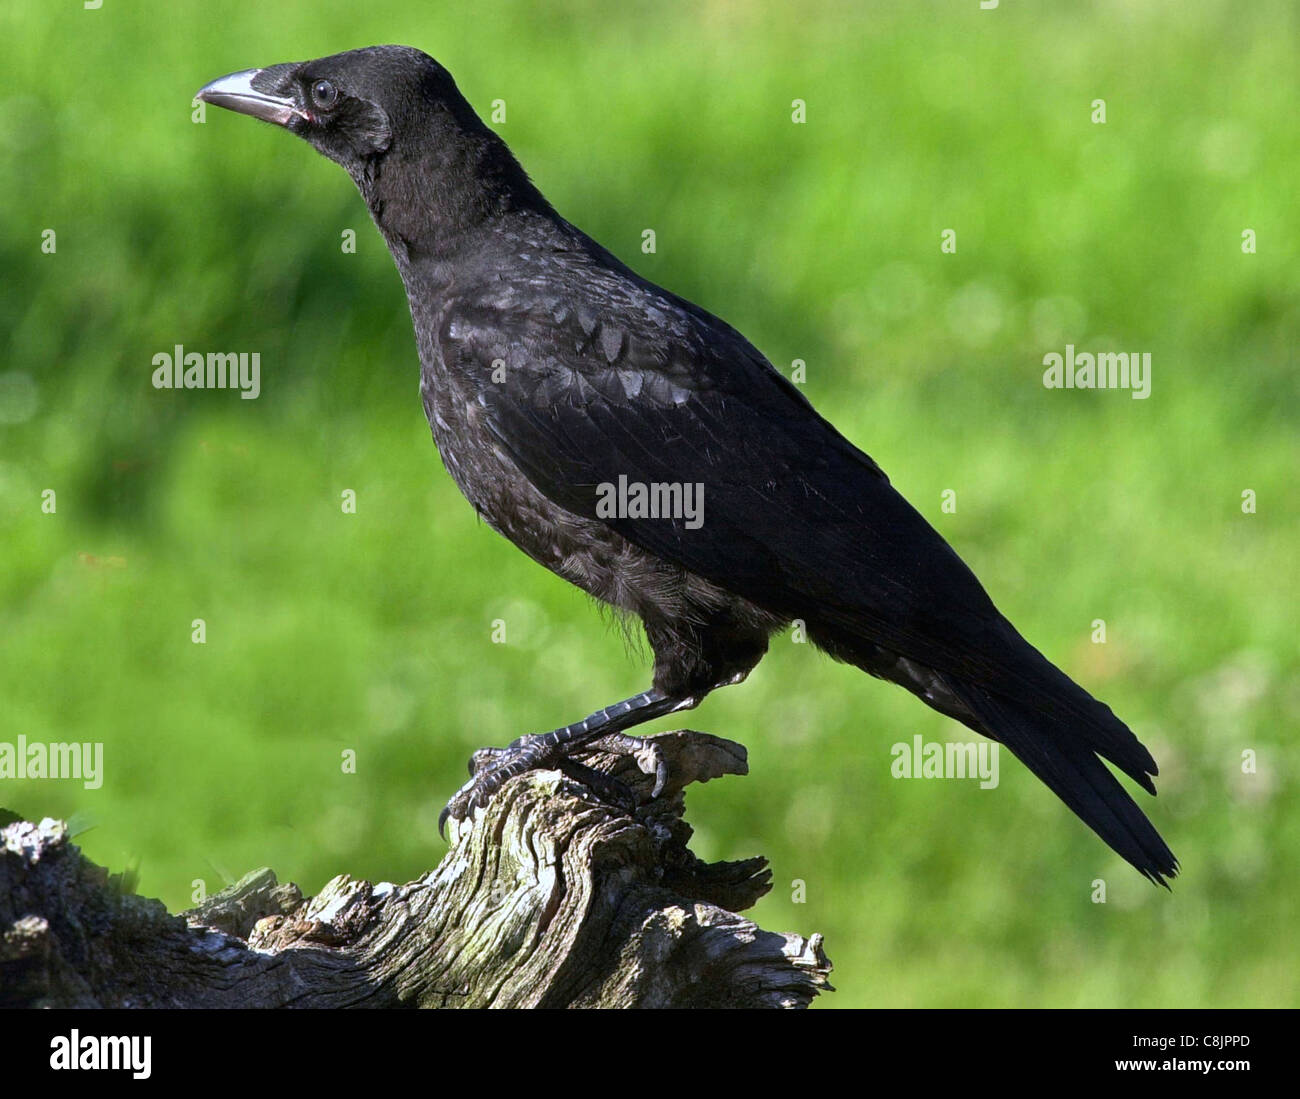 El cuervo Carrion Crow (Latín: Corvus Corone Corone) solitaria ave residente británico desconfía del contacto humano y disfrutando de gran inteligencia. Foto de stock